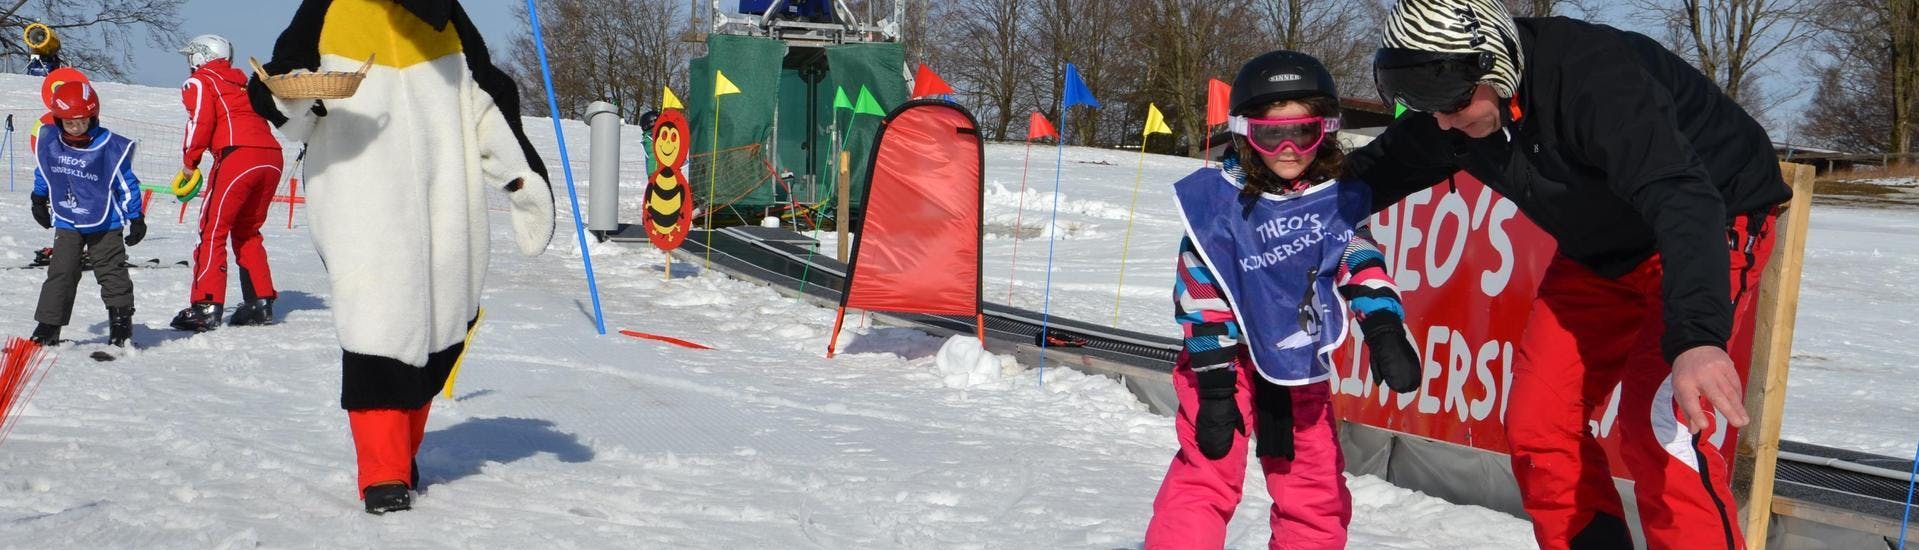 Een kind leert skiën tijdens een privéles voor kinderen (vanaf 5 jaar) met een van de skileraren van DSV Skischule Züschen in het skigebied van Winterberg.